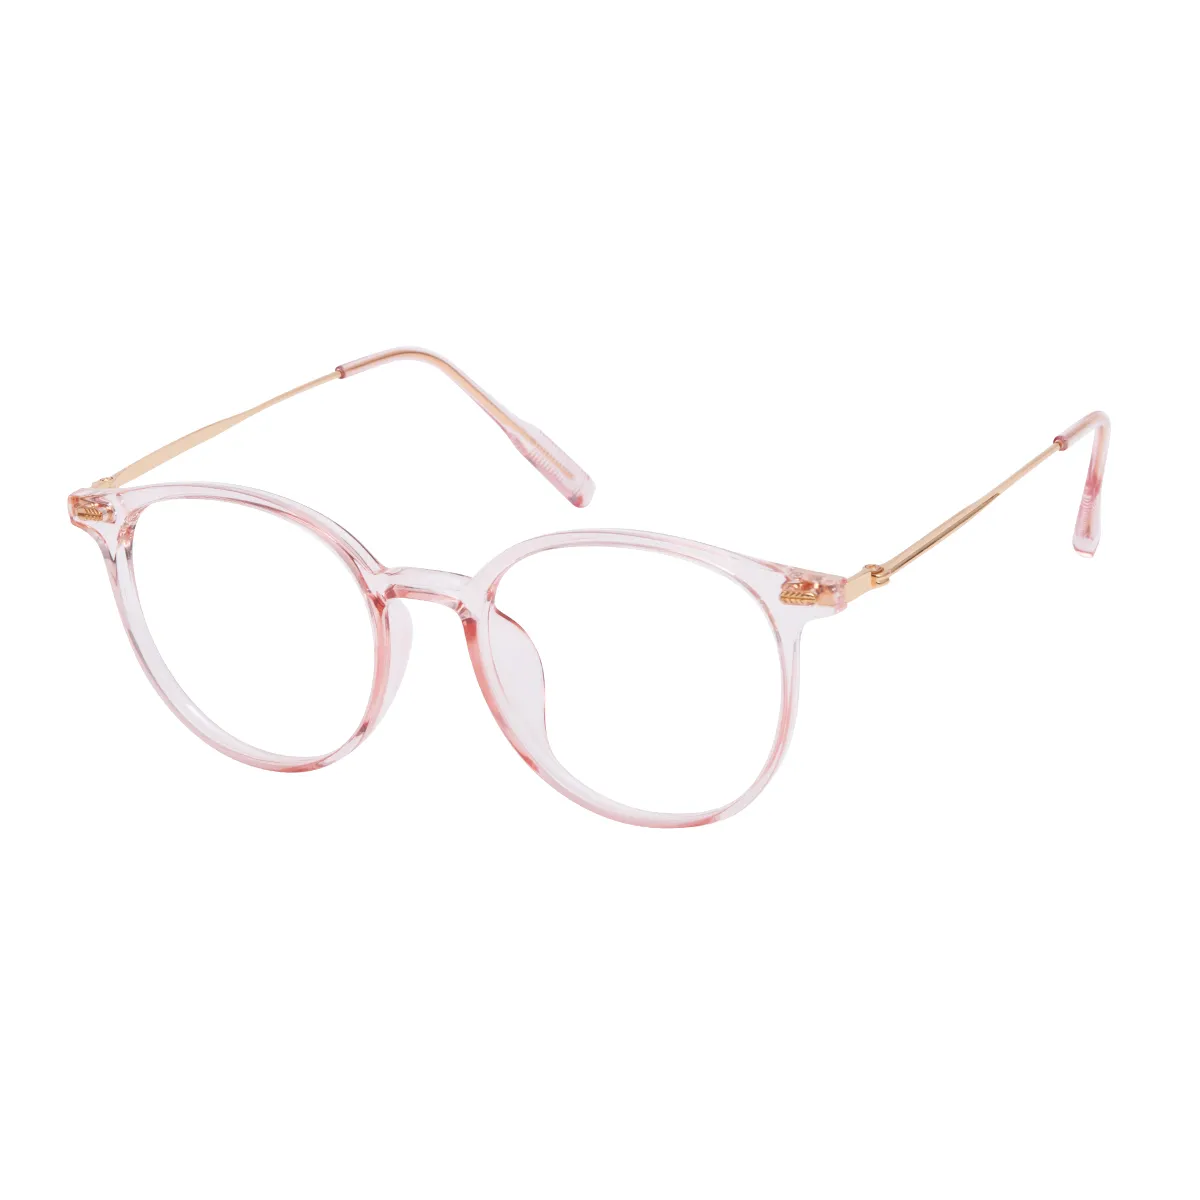 Skylar - Round Translucent Pink Glasses for Men & Women